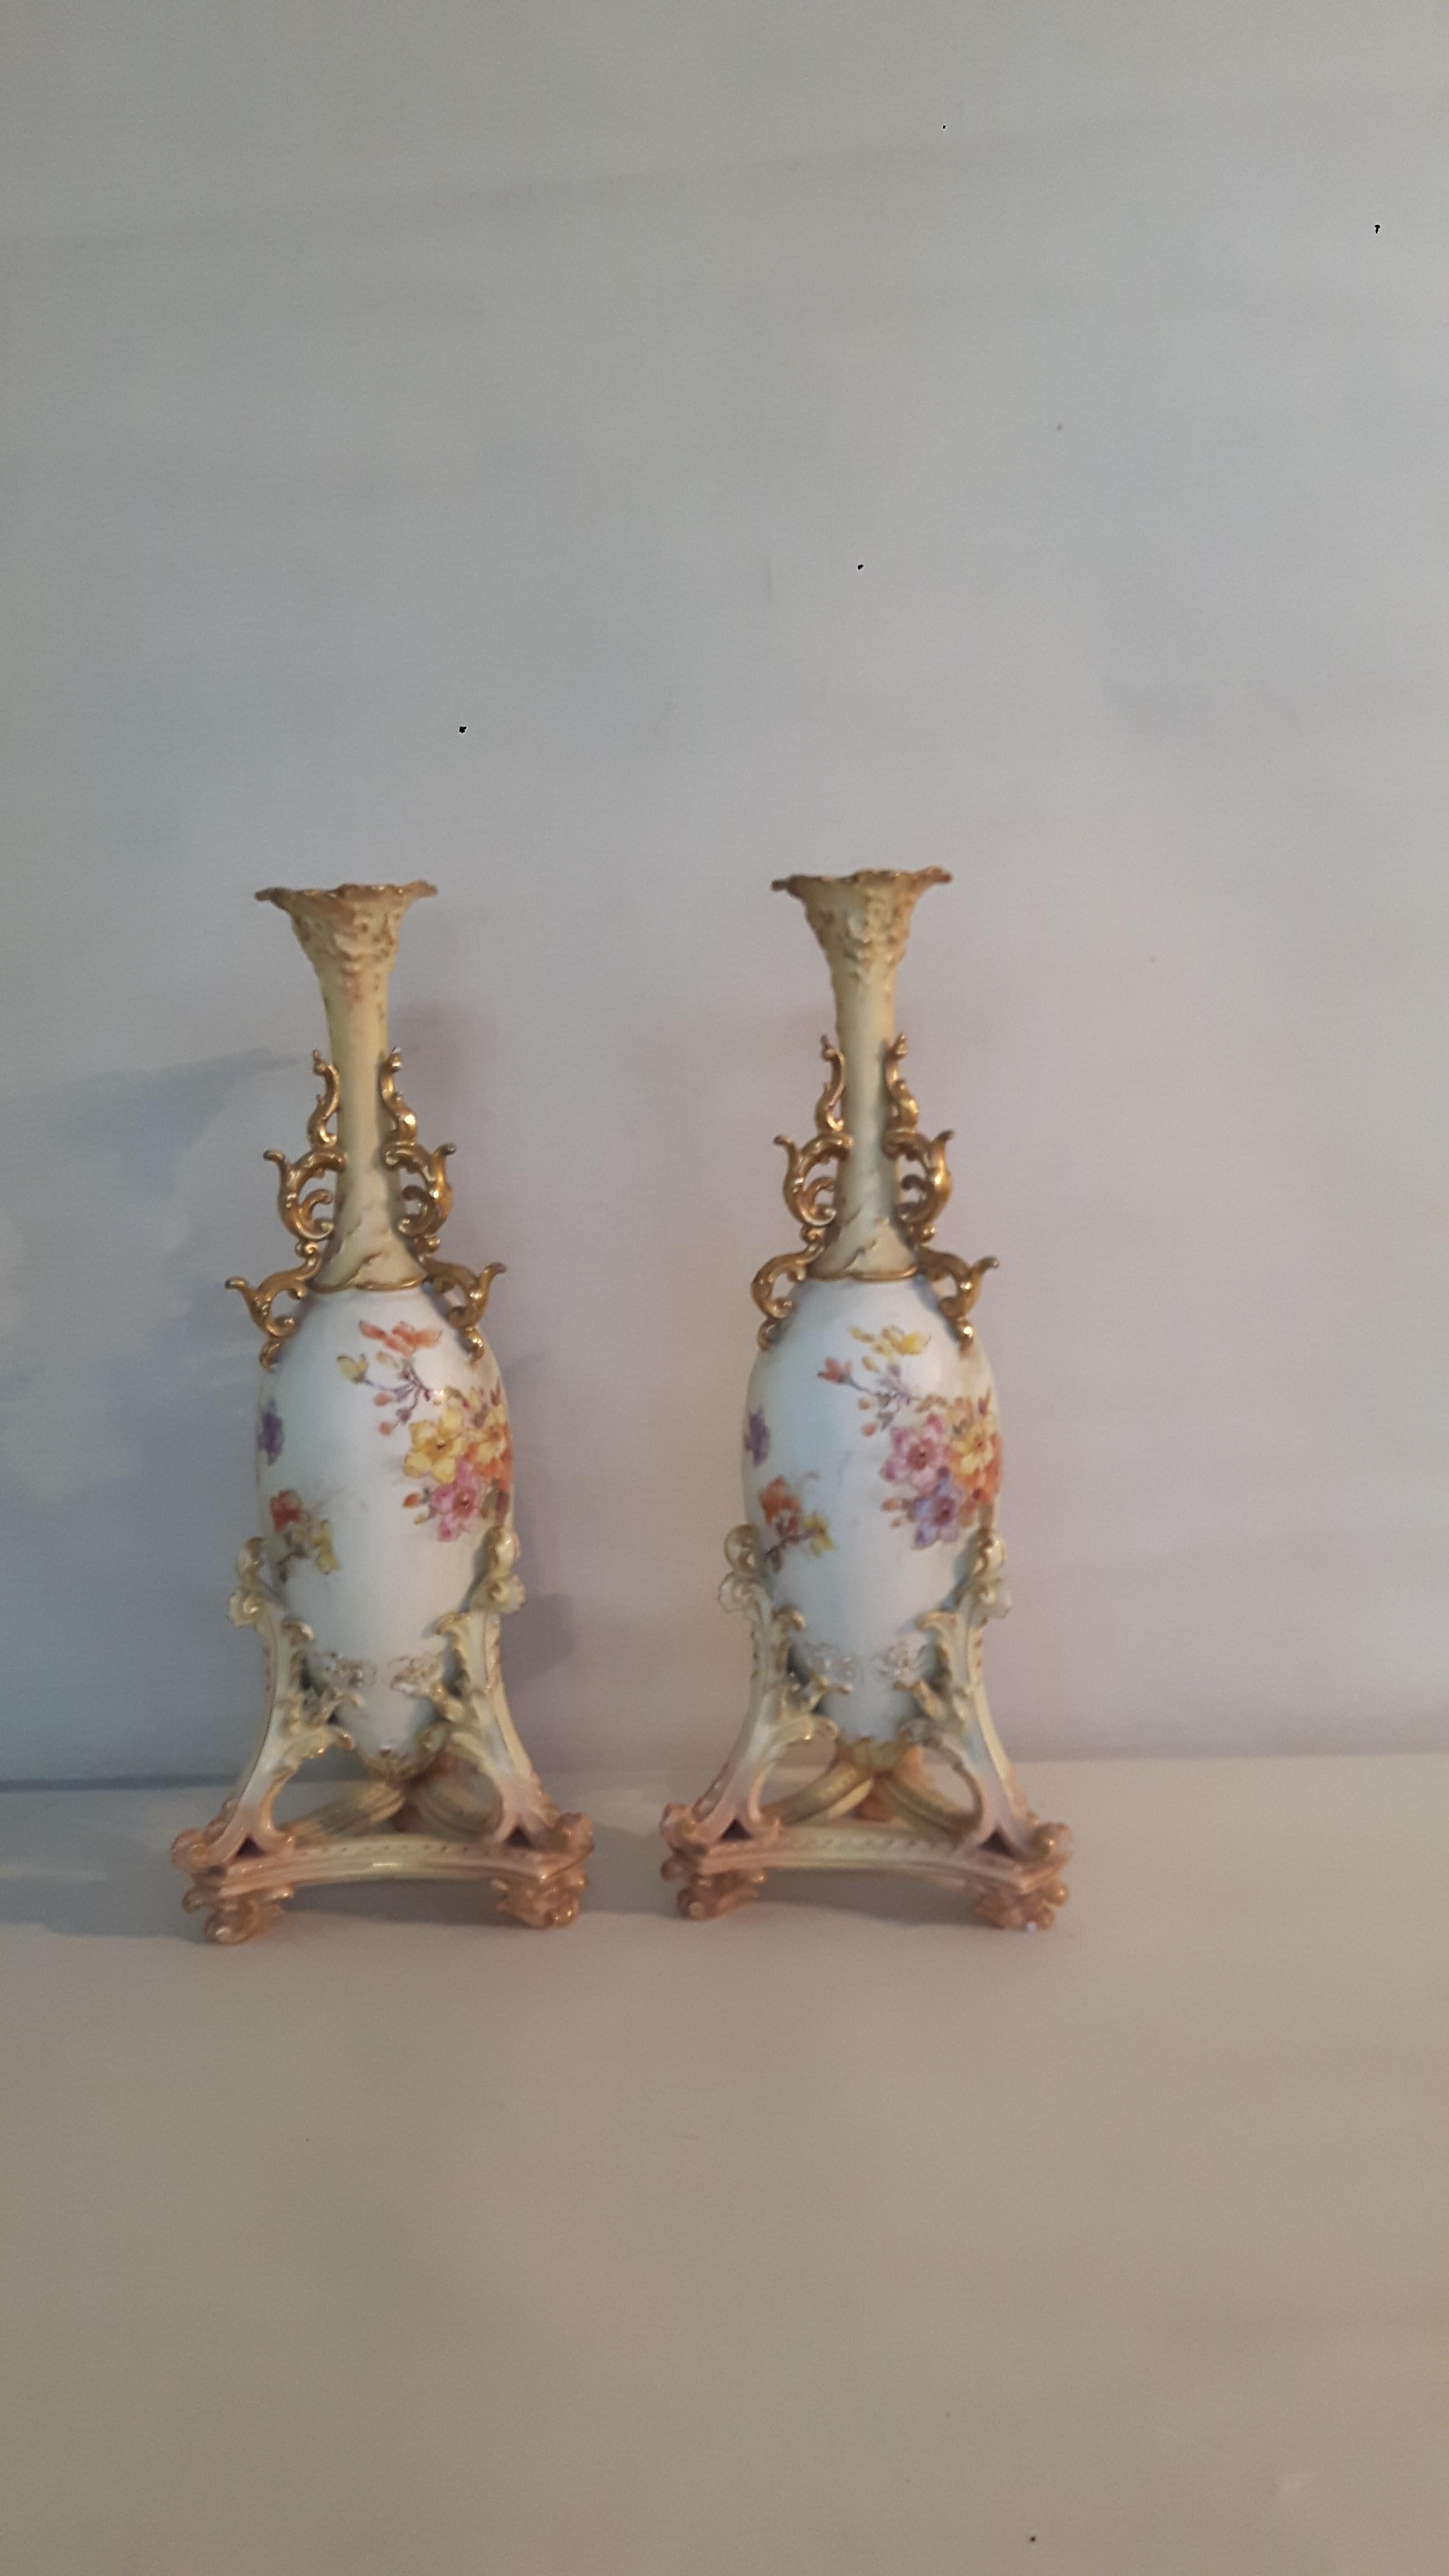 Ein Paar Rudolfstädter Porzellanvasen, ganz im Stil von Royal Worcester, handbemalt mit floralen Motiven auf einem Enteneier-Fond; der Hals und der Fuß der Vasen sind mit Biskuit- und vergoldeten Schnörkeln verziert, die Hälse mit einer vergoldeten